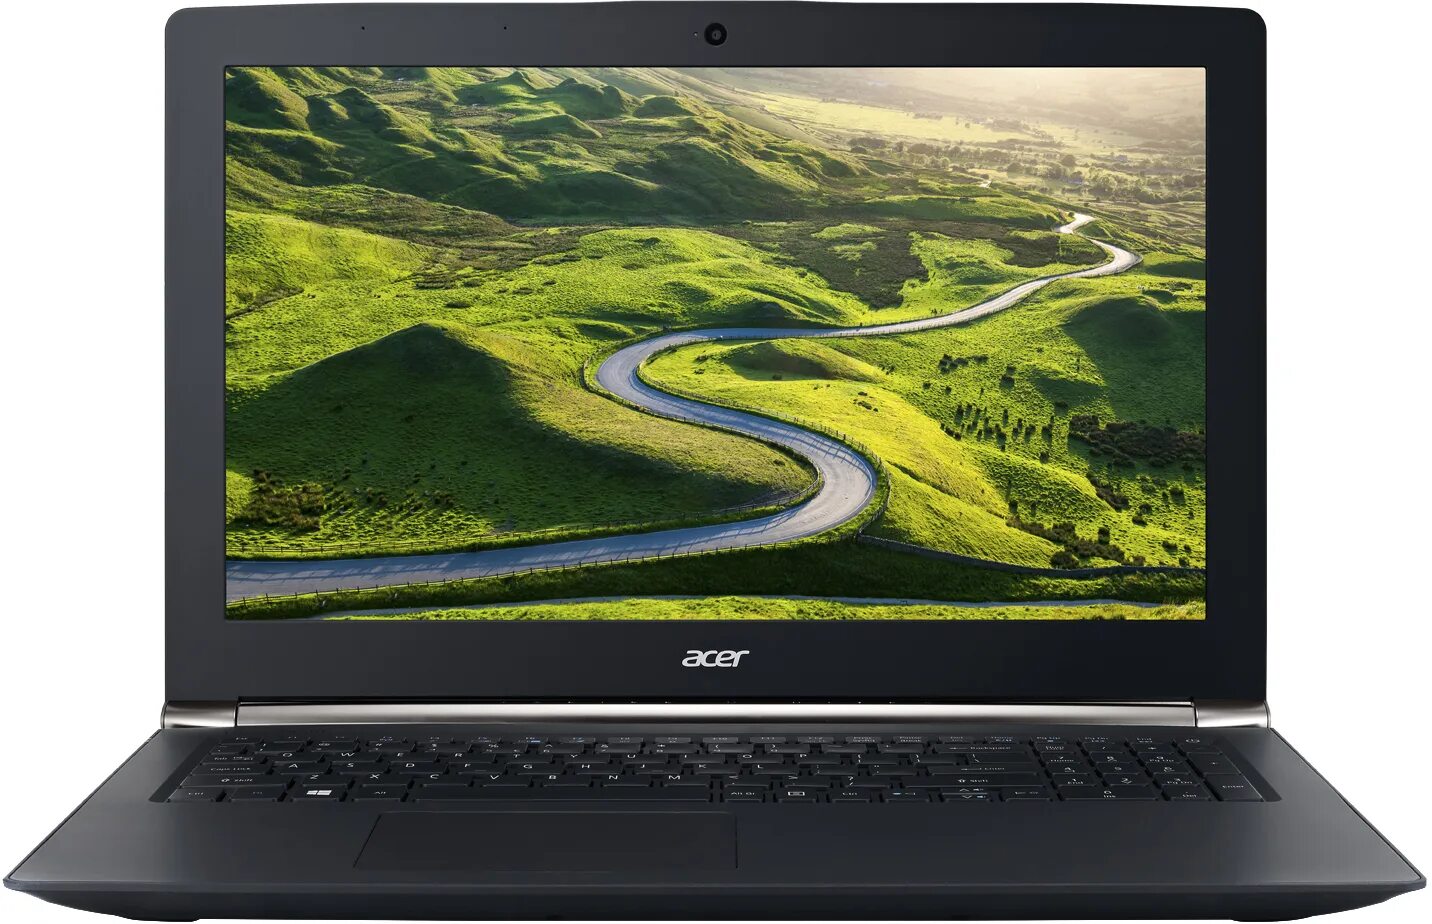 Ноутбук Acer Aspire e5-575g. Ноутбук Acer Aspire es 15. Acer Aspire e5-576g. Aspire e5-475g.